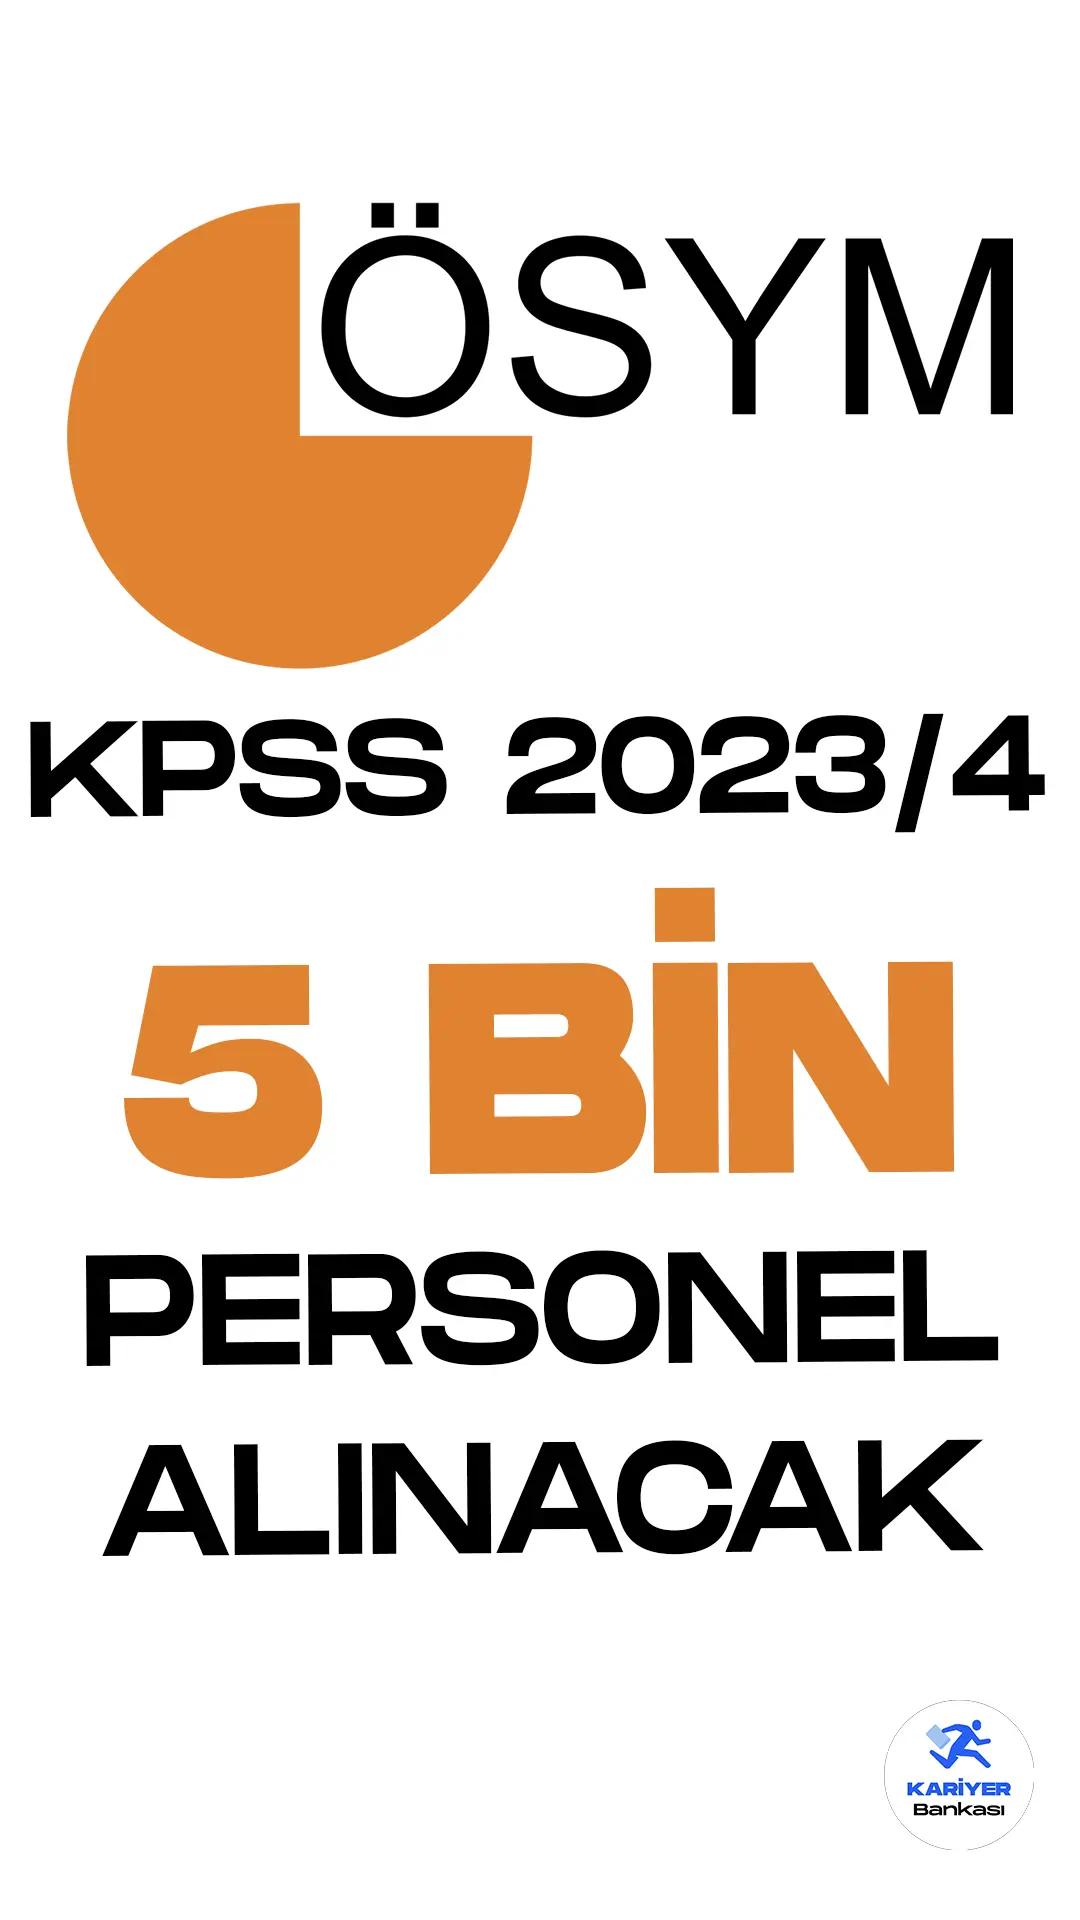 KPSS 2023 4 ile 5 bin personel alımı yapılacak.